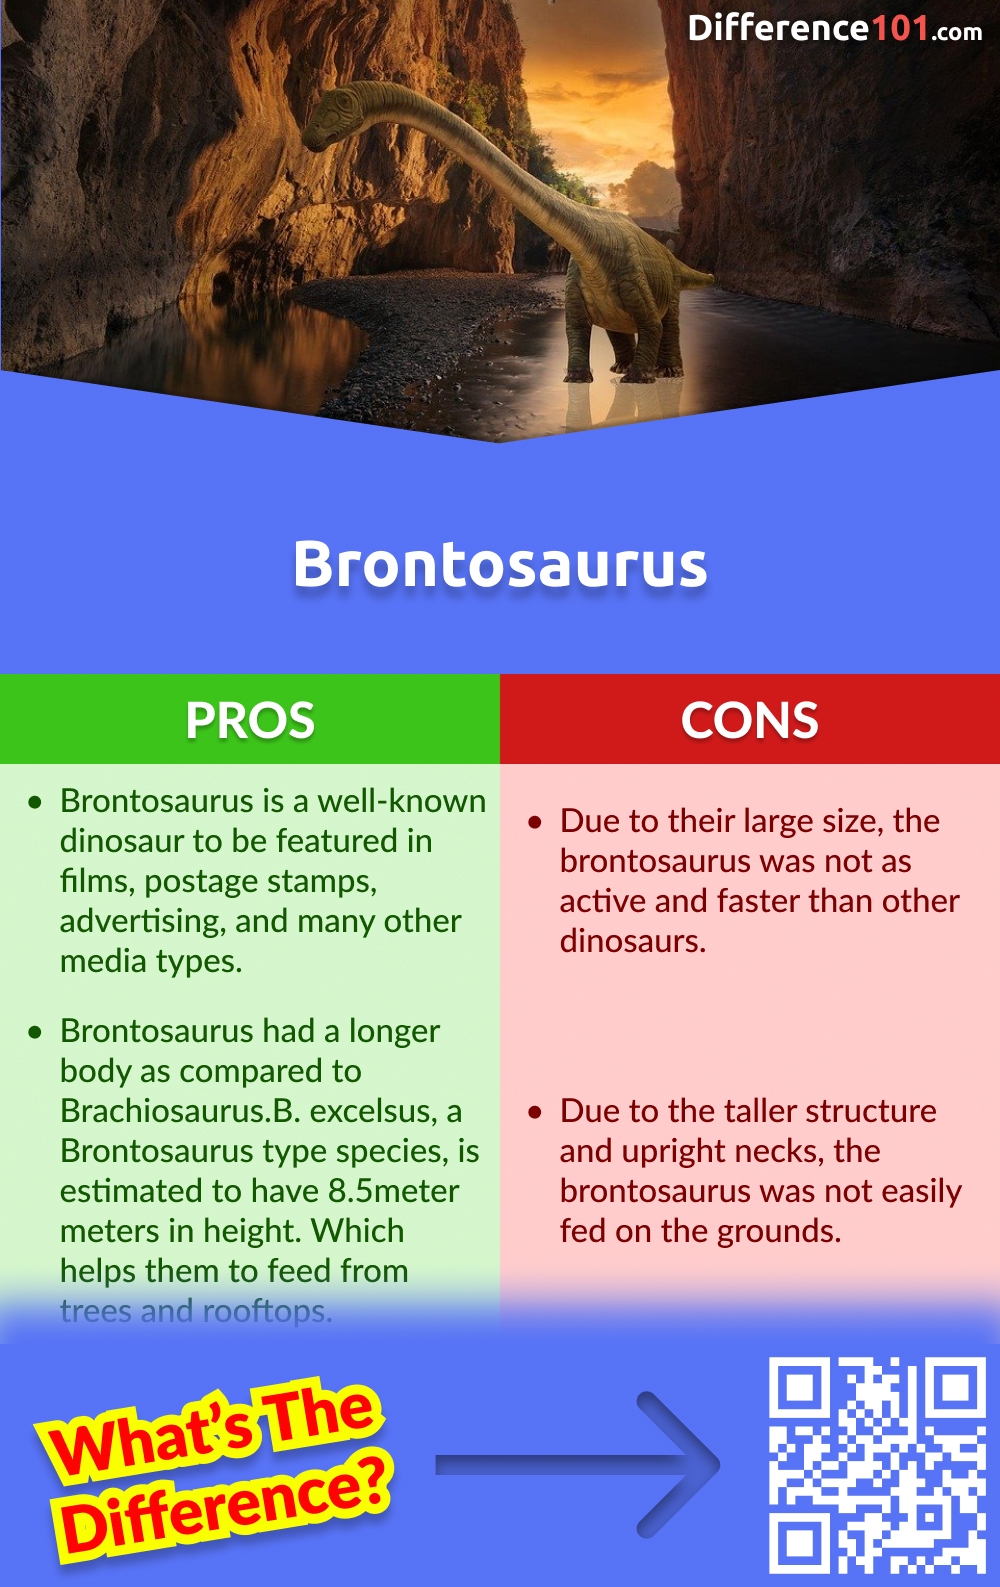 Brontosaurus Pros & Cons